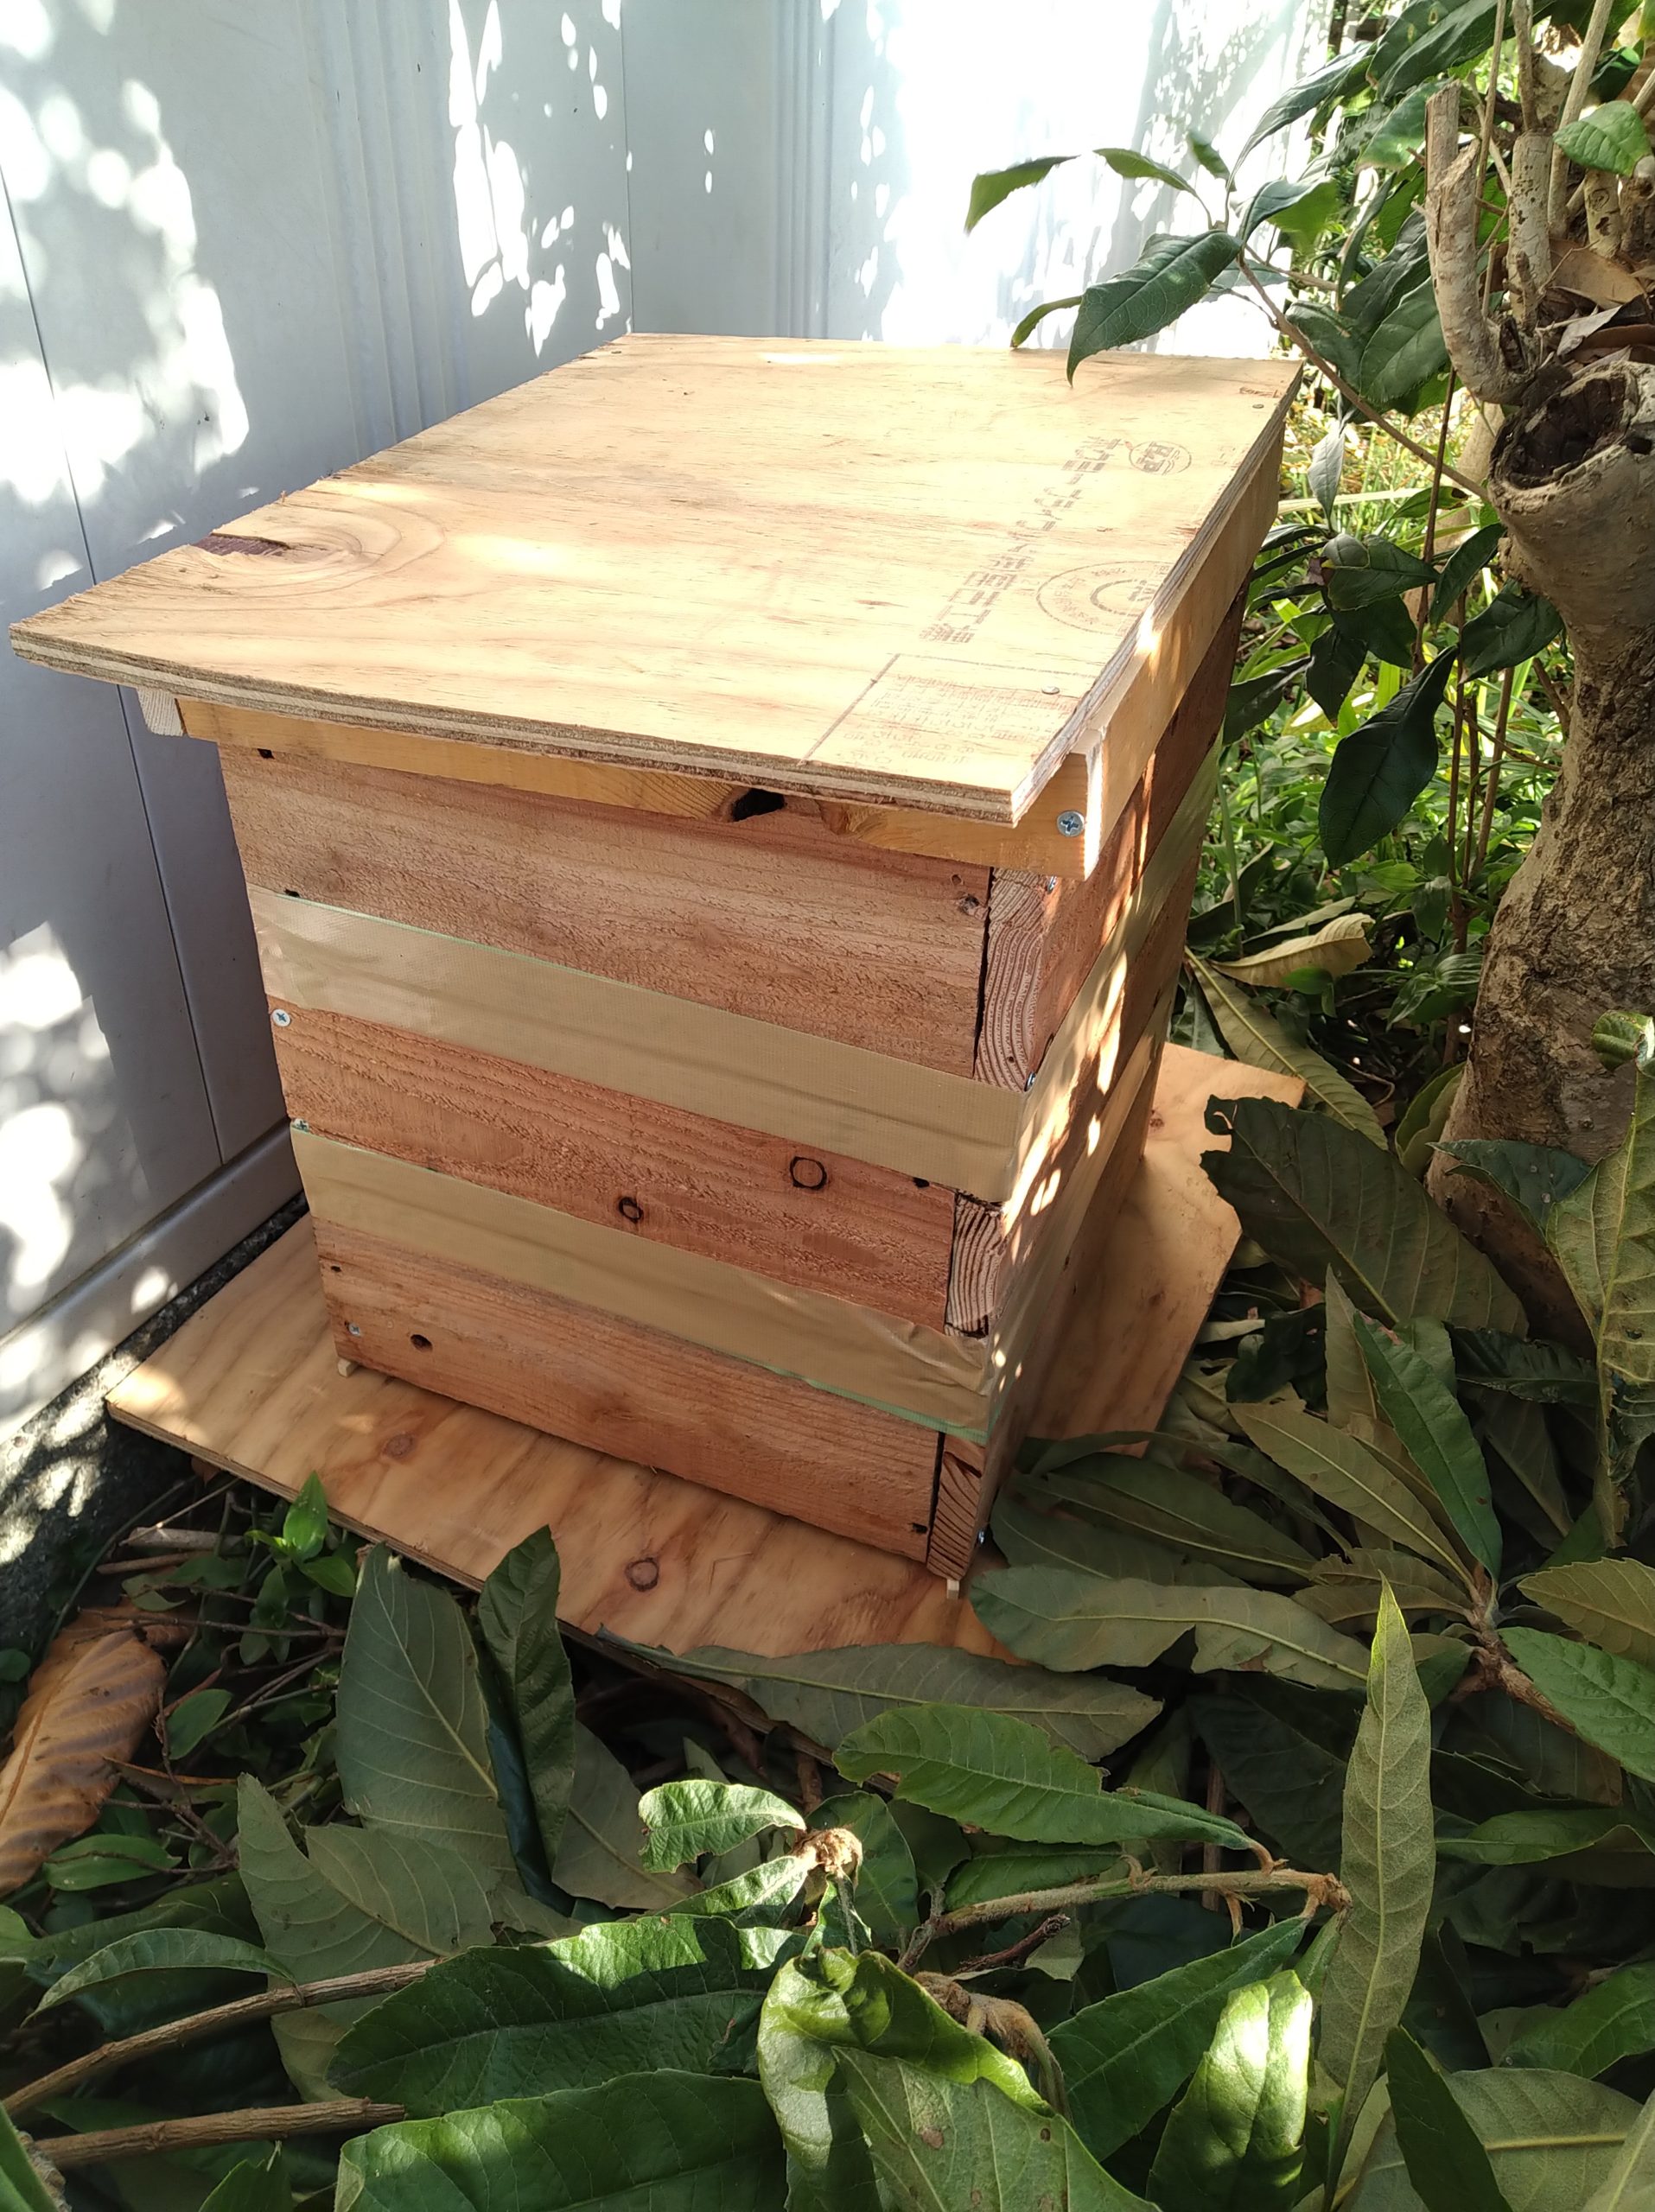 日本蜜蜂熟練大工作製、柾目板使用で重箱の節抜けの心配なし、日本蜜蜂